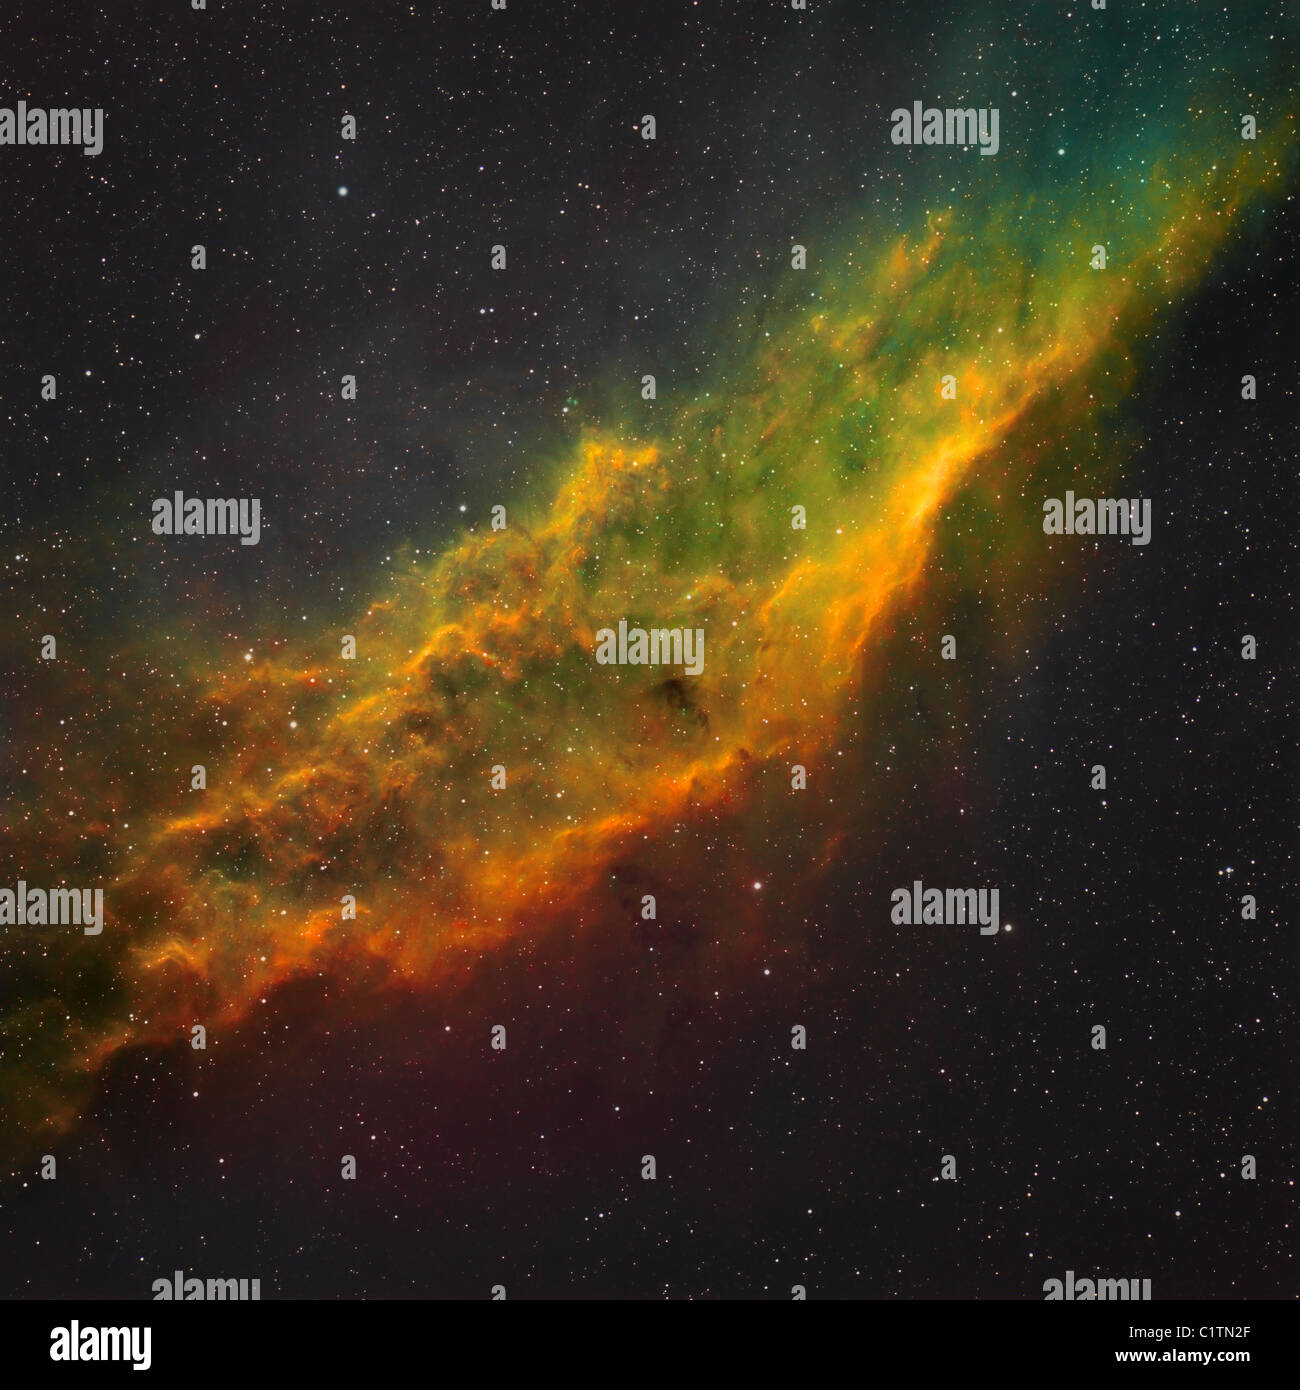 Narrowband image of NGC 1499, The California Nebula. Stock Photo